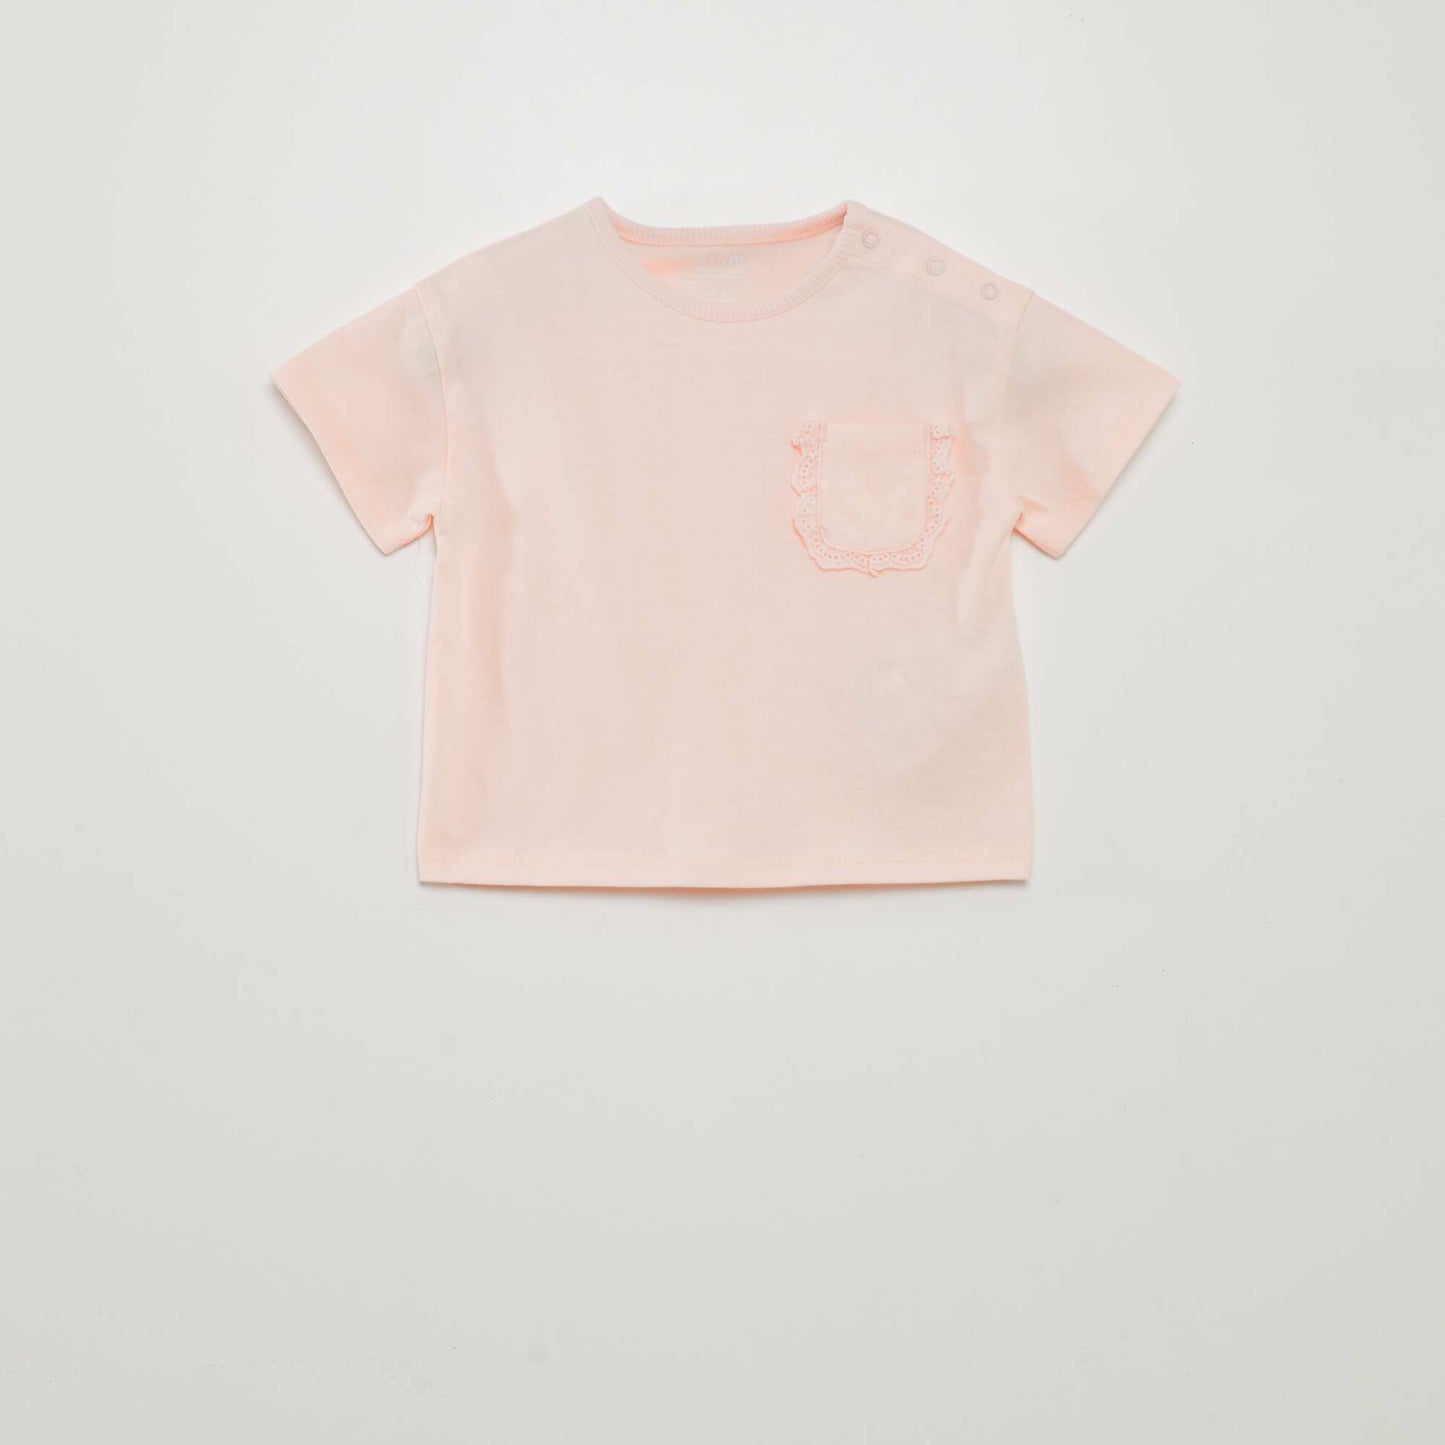 Cotton set - t-shirt + leggings - 2-piece set PURPLE